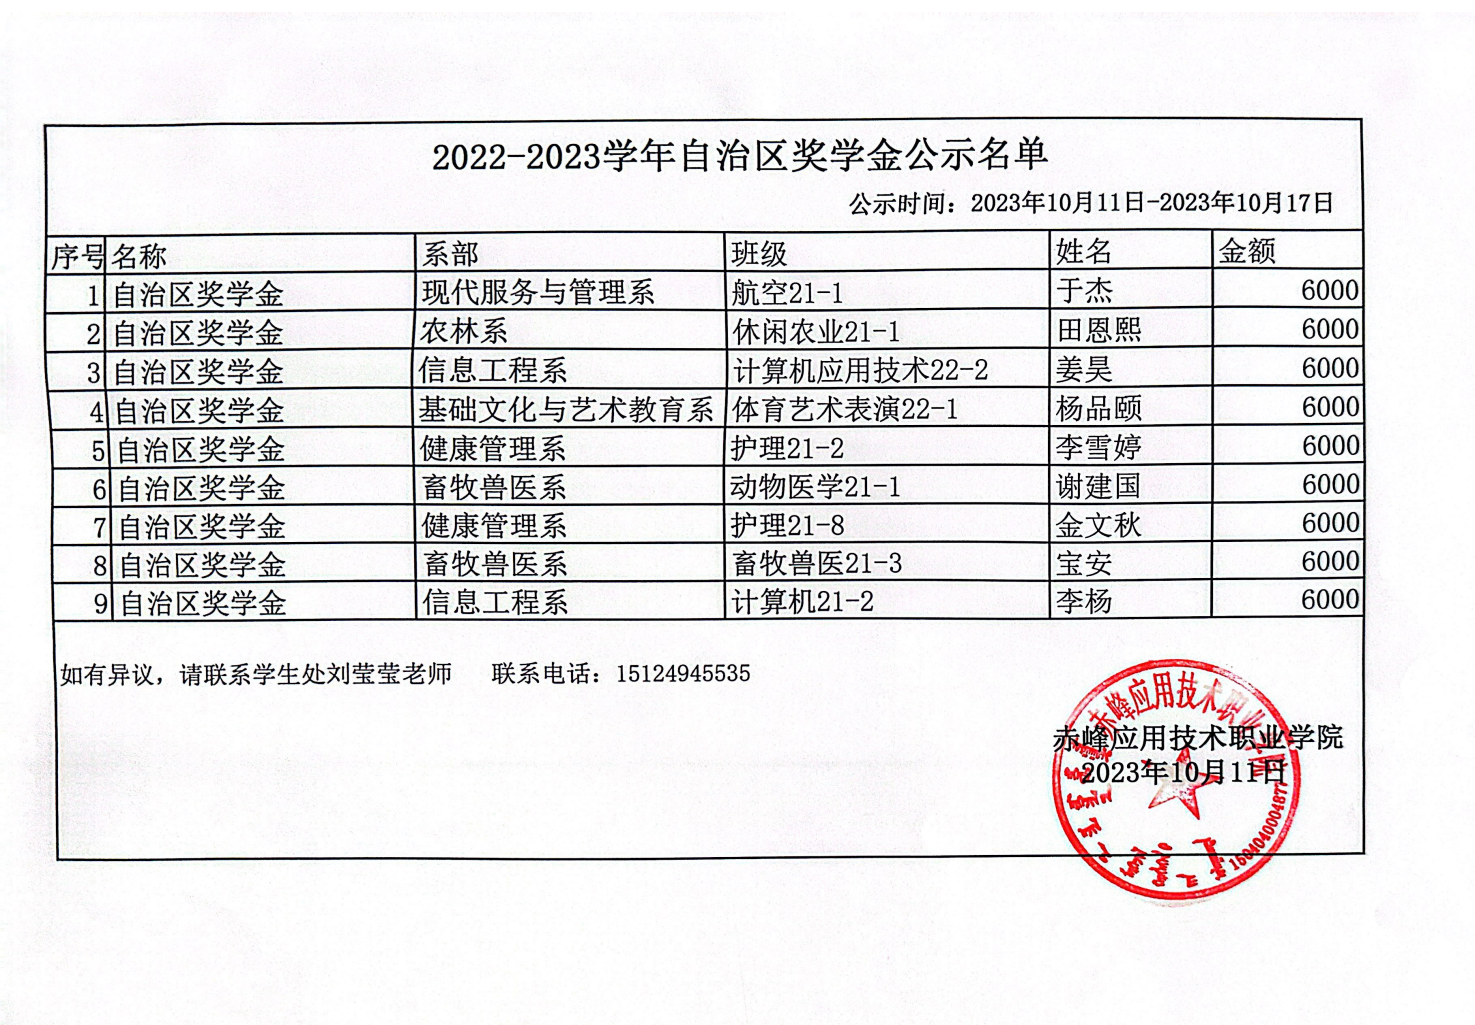 2022-2023学年自治区奖学金公式名单_00.png